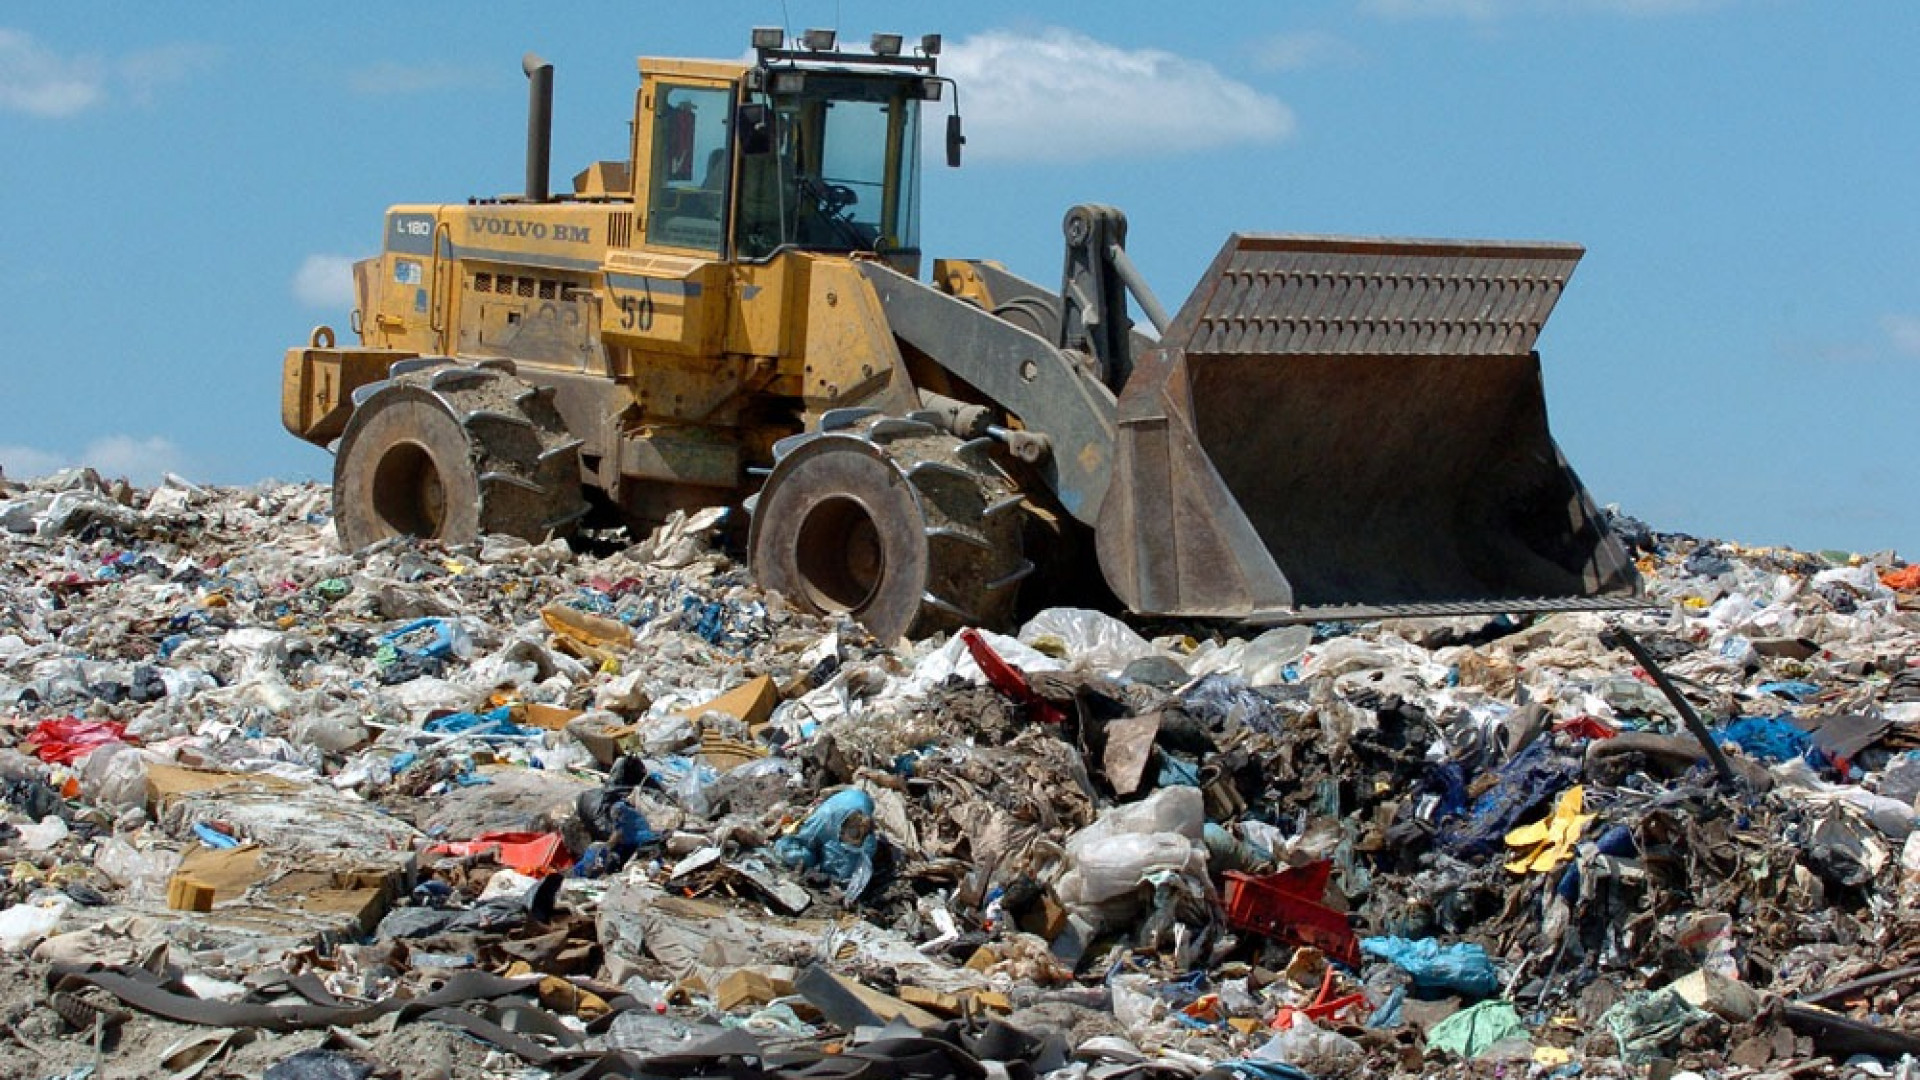 Пром отходы. Свалка. Утилизация отходов производства. Утилизация бытовых отходов. Бытовые и промышленные отходы.